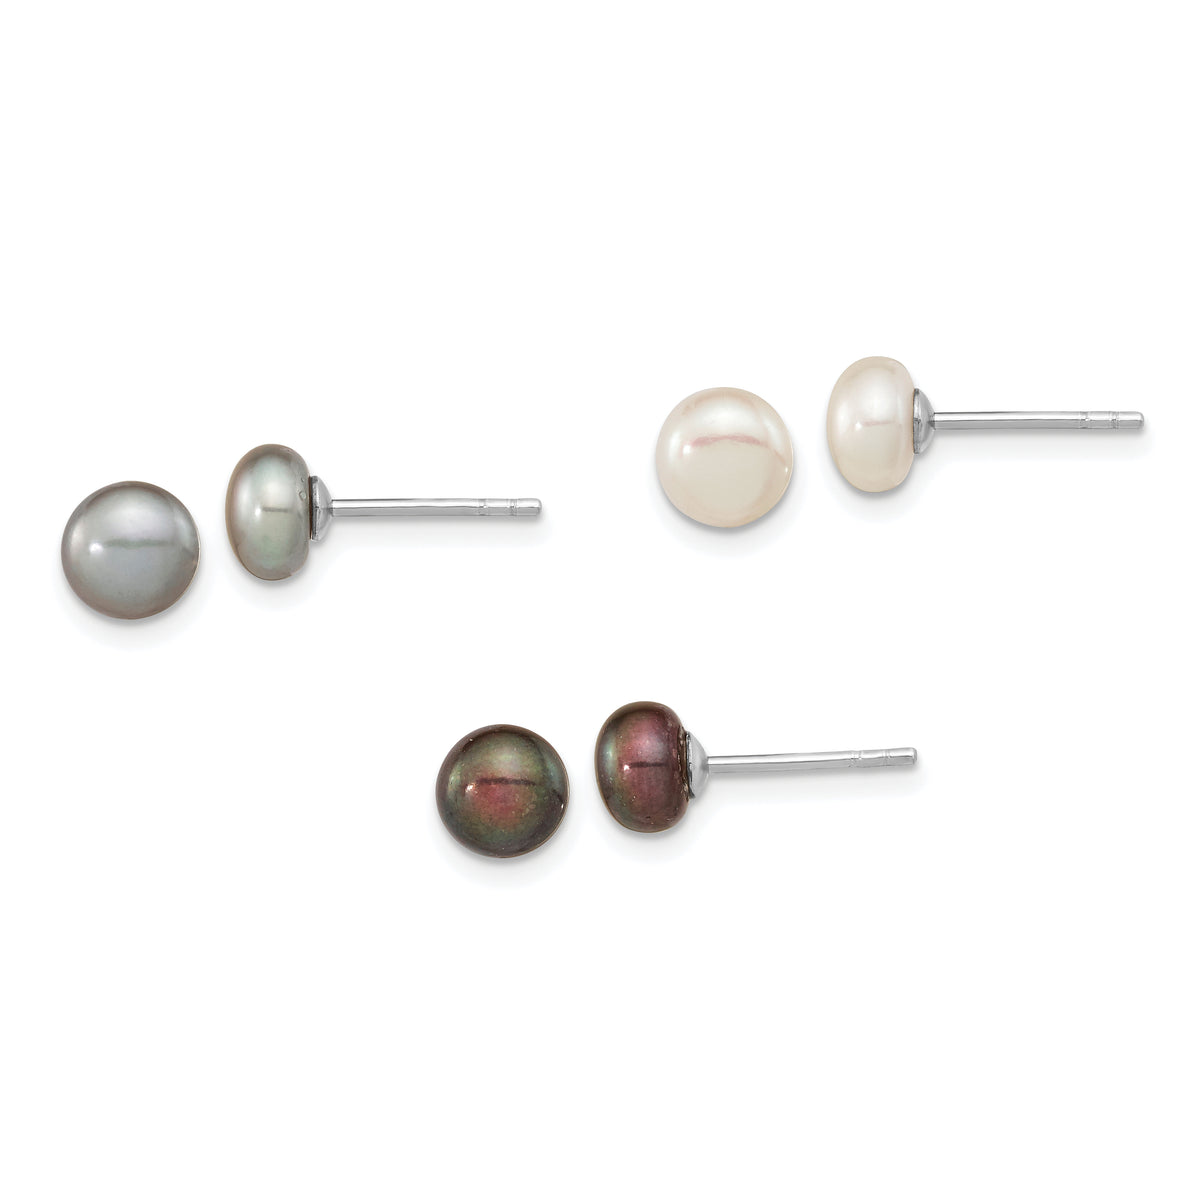 Sterling Silver Rh-pl 6-7mm Set of 3 Wt/Bk/Grey Button FWC Pearl Earrings